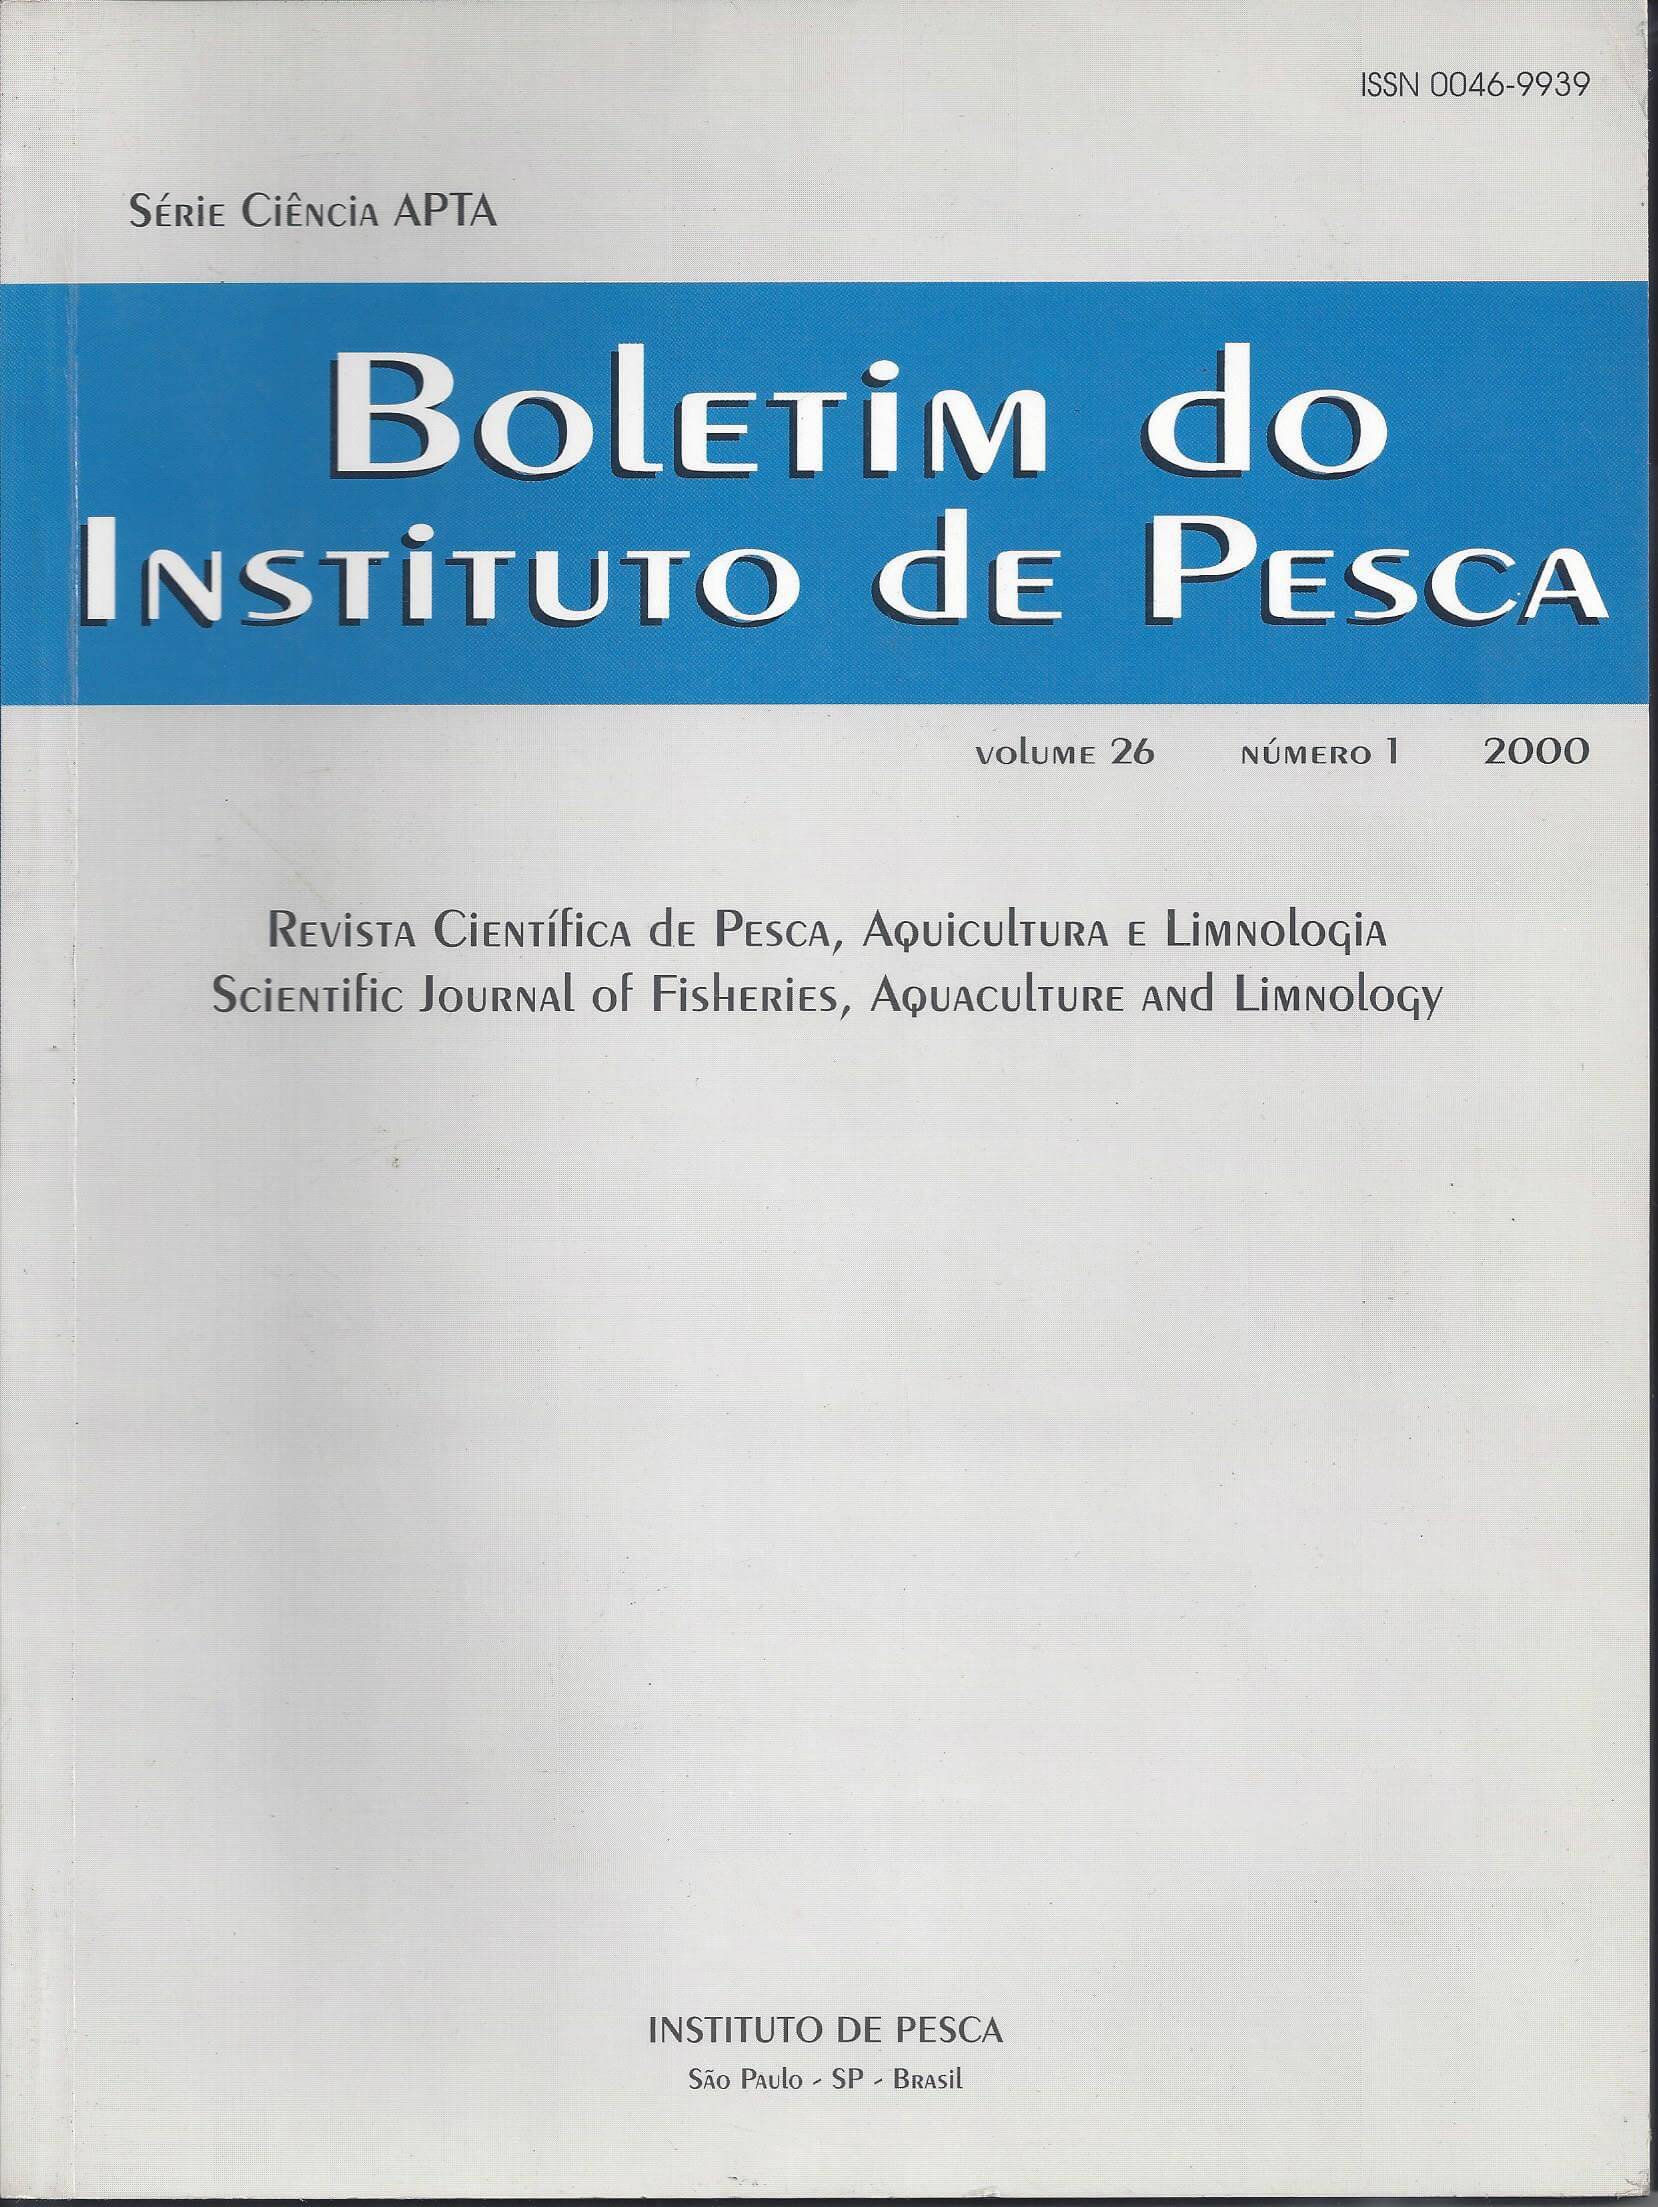 					View Vol. 26 No. 1 (2000): BOLETIM DO INSTITUTO DE PESCA
				